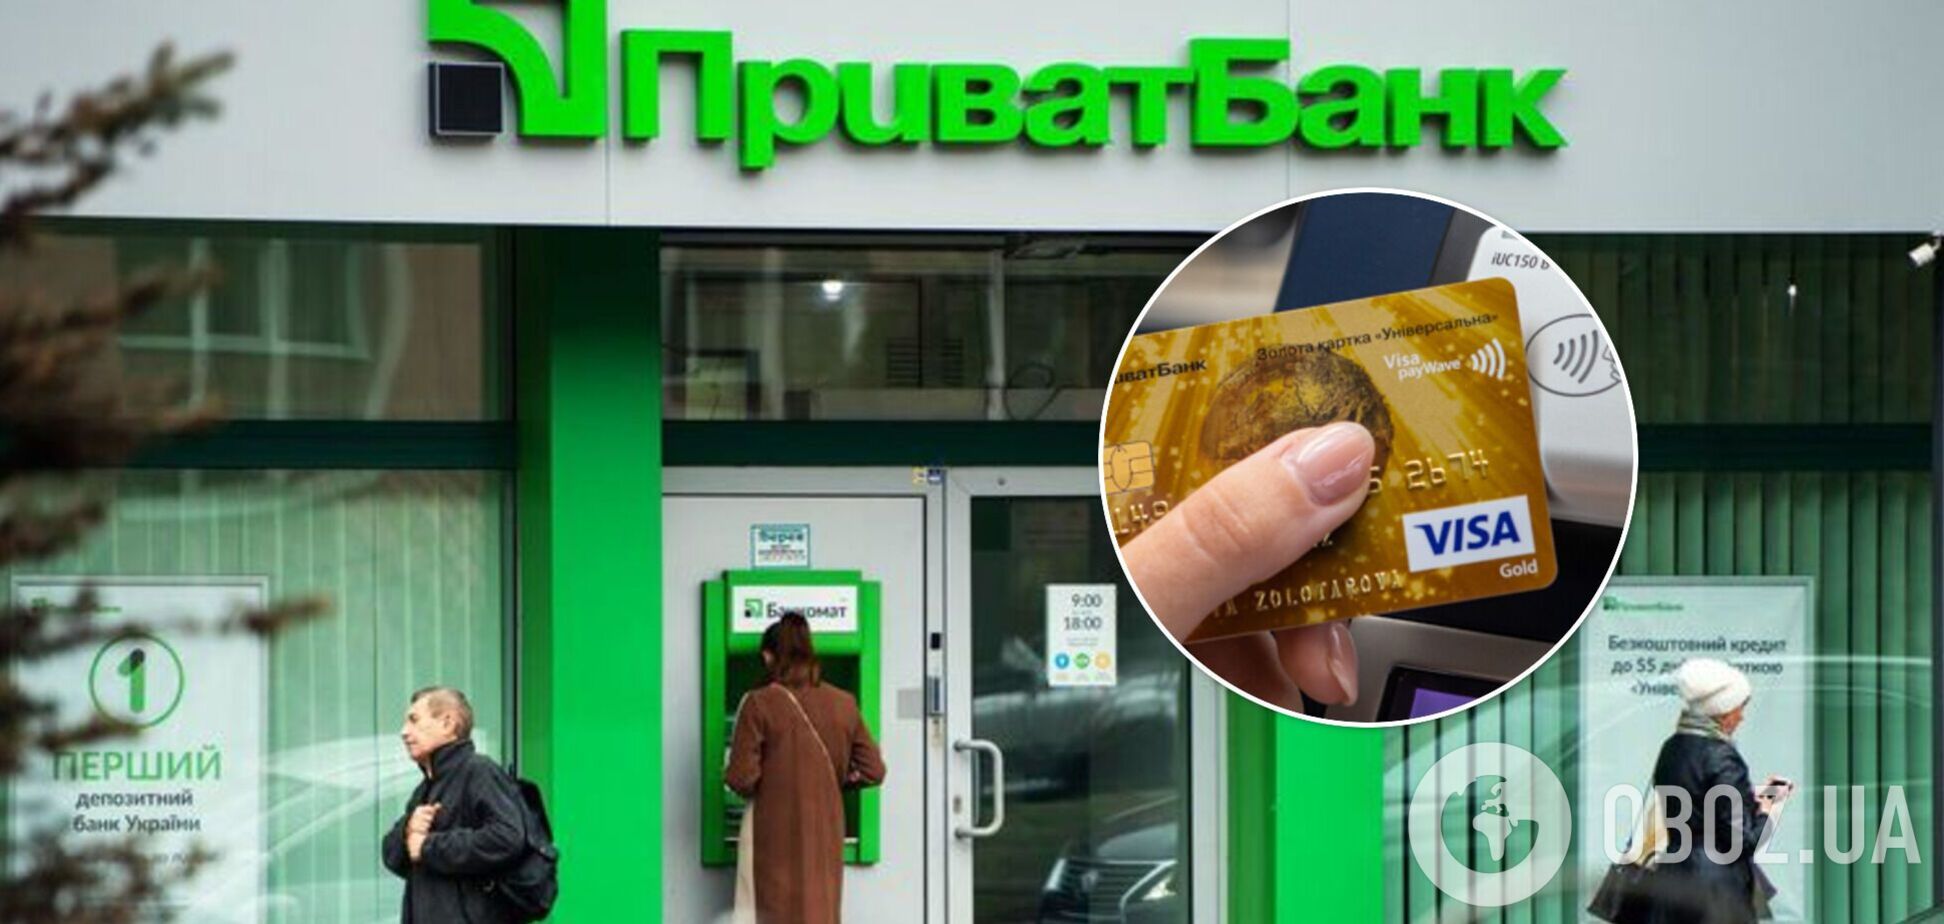 У 'ПриватБанку' стався збій: можливі проблеми у роботі банкоматів та при оплаті картками